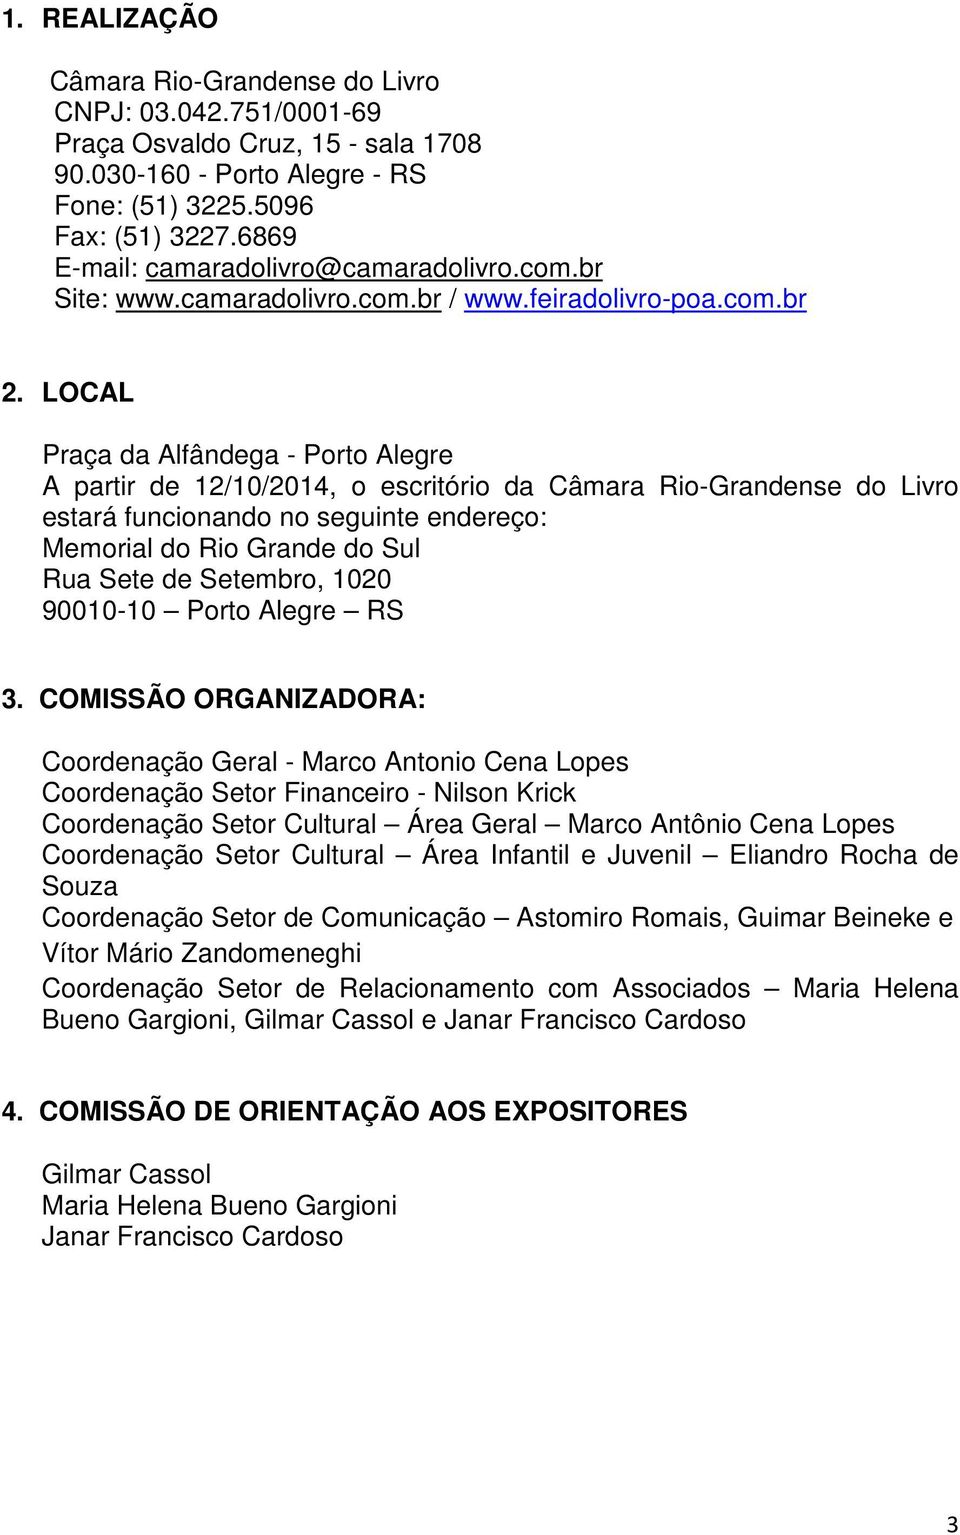 LOCAL Praça da Alfândega - Porto Alegre A partir de 12/10/2014, o escritório da Câmara Rio-Grandense do Livro estará funcionando no seguinte endereço: Memorial do Rio Grande do Sul Rua Sete de